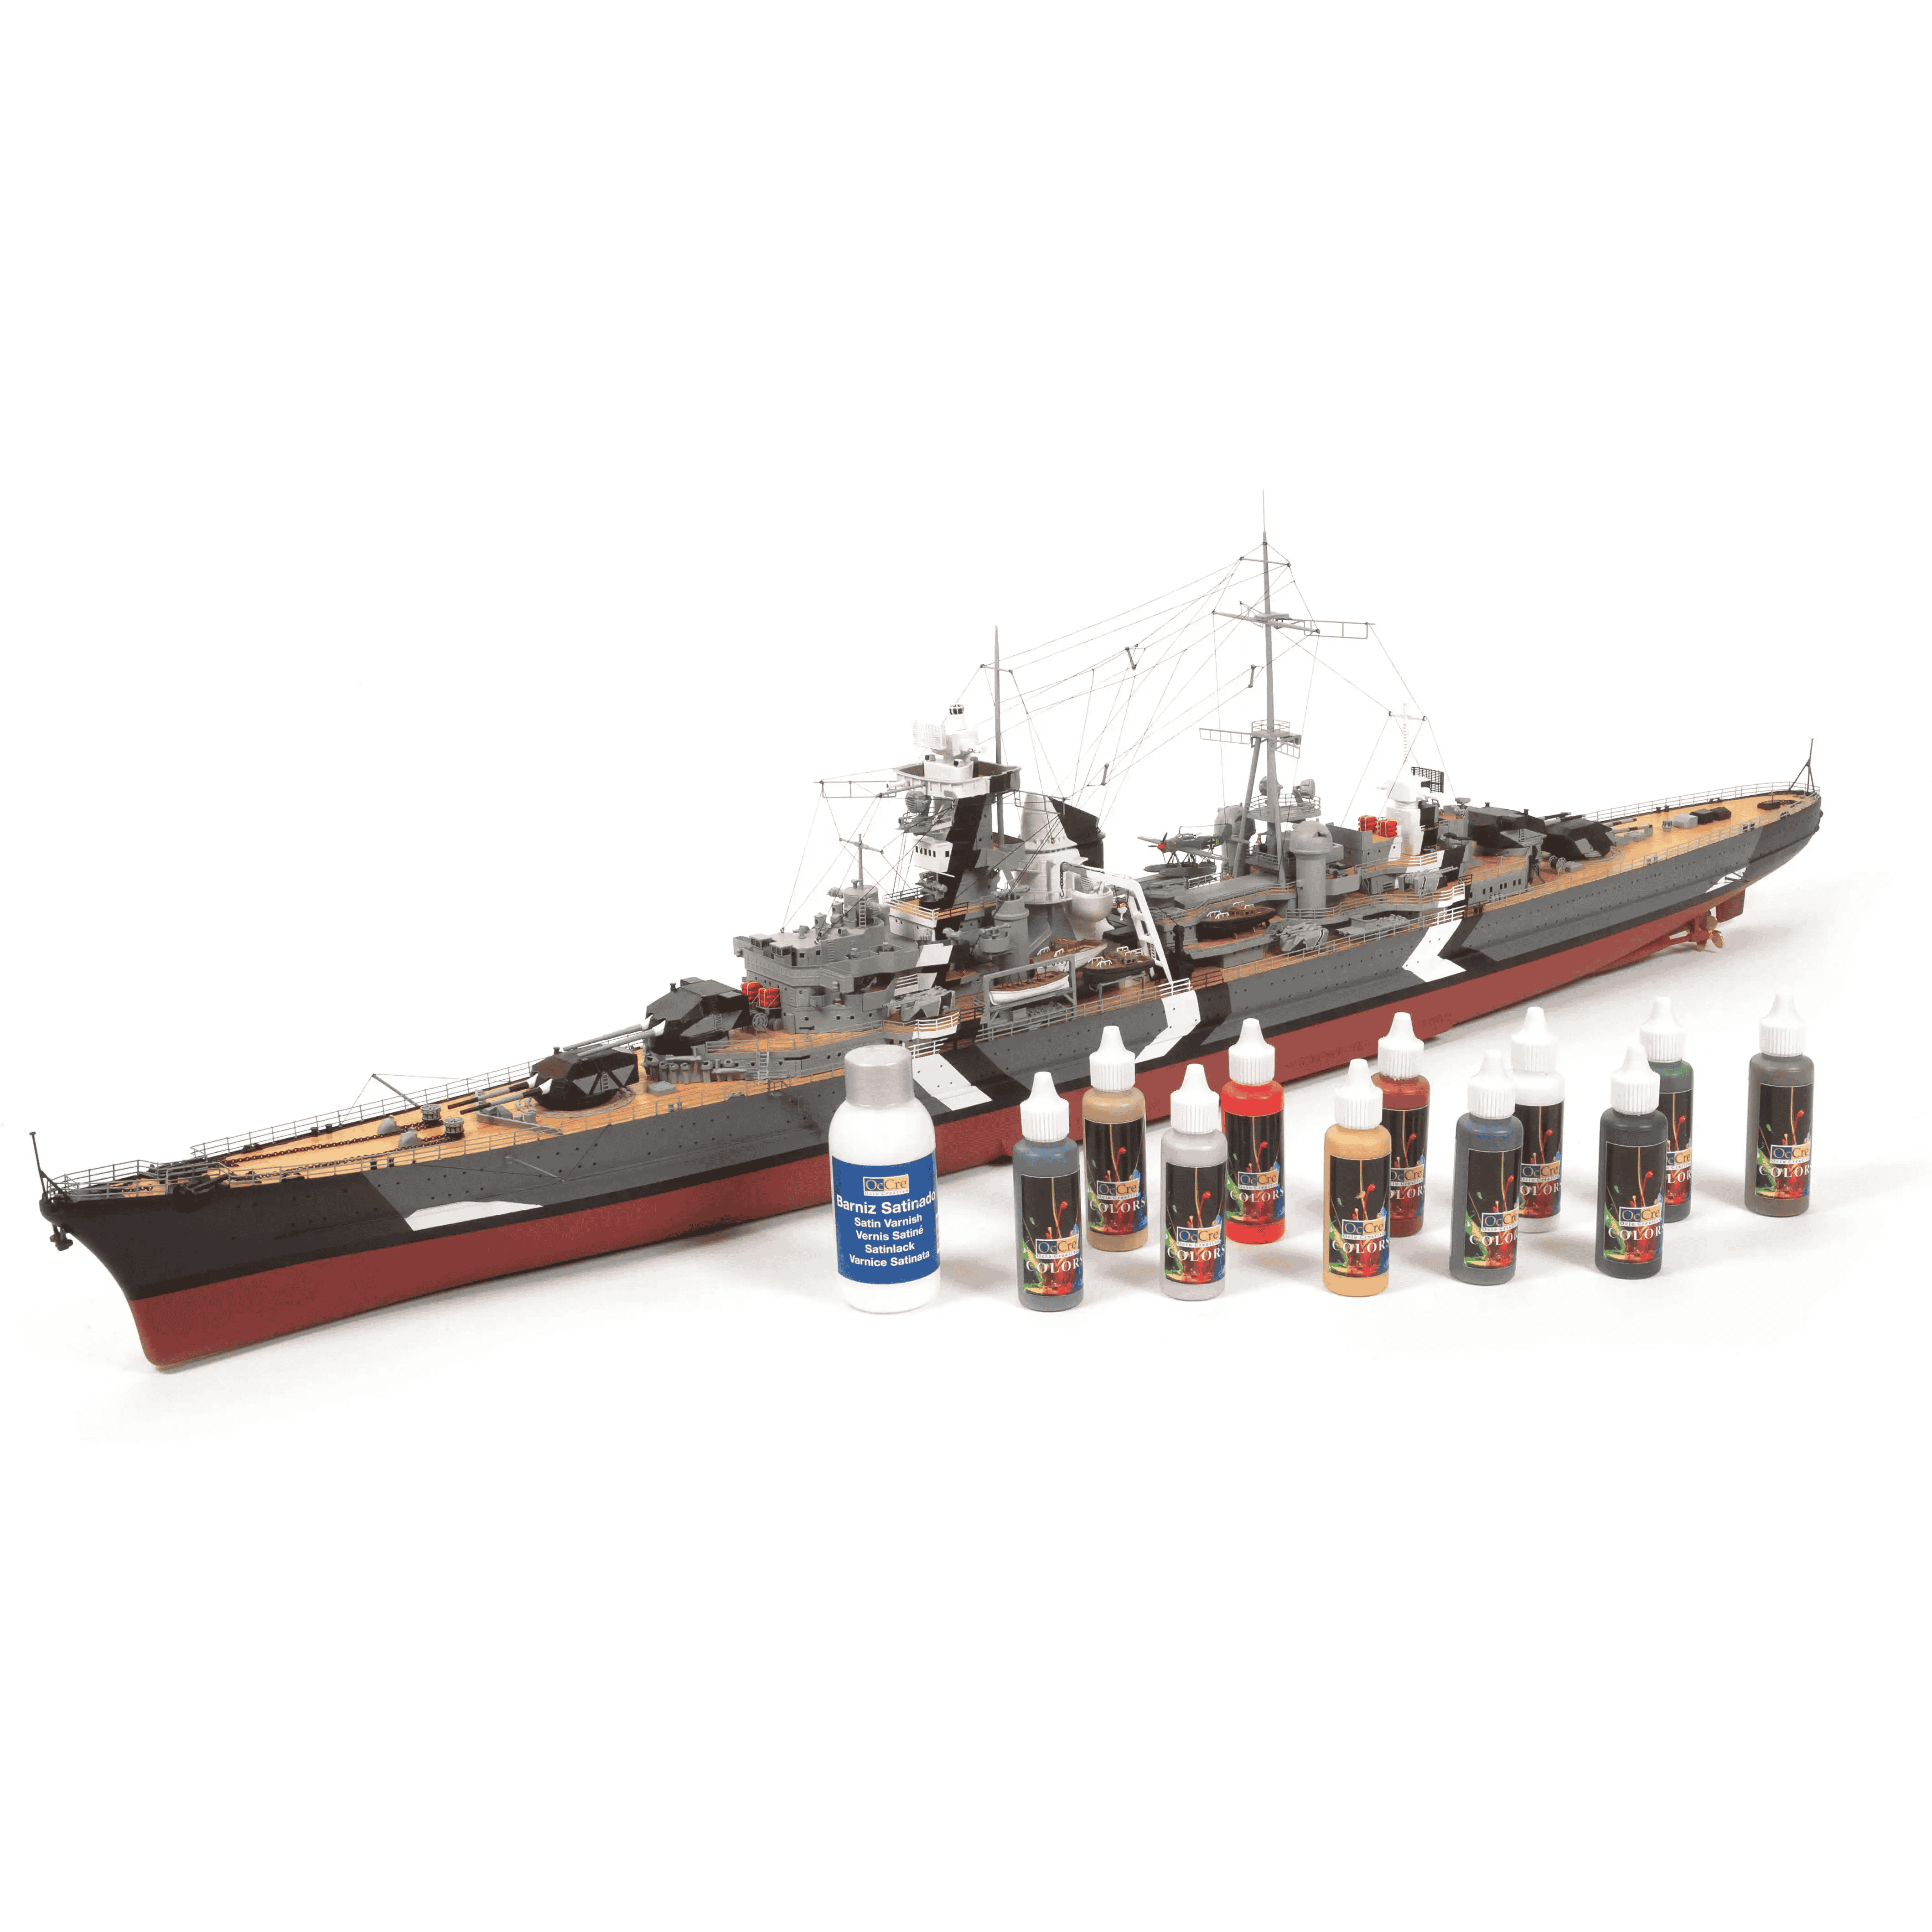 Prinz Eugen Pack de peinture acrylique - Occre (90506)